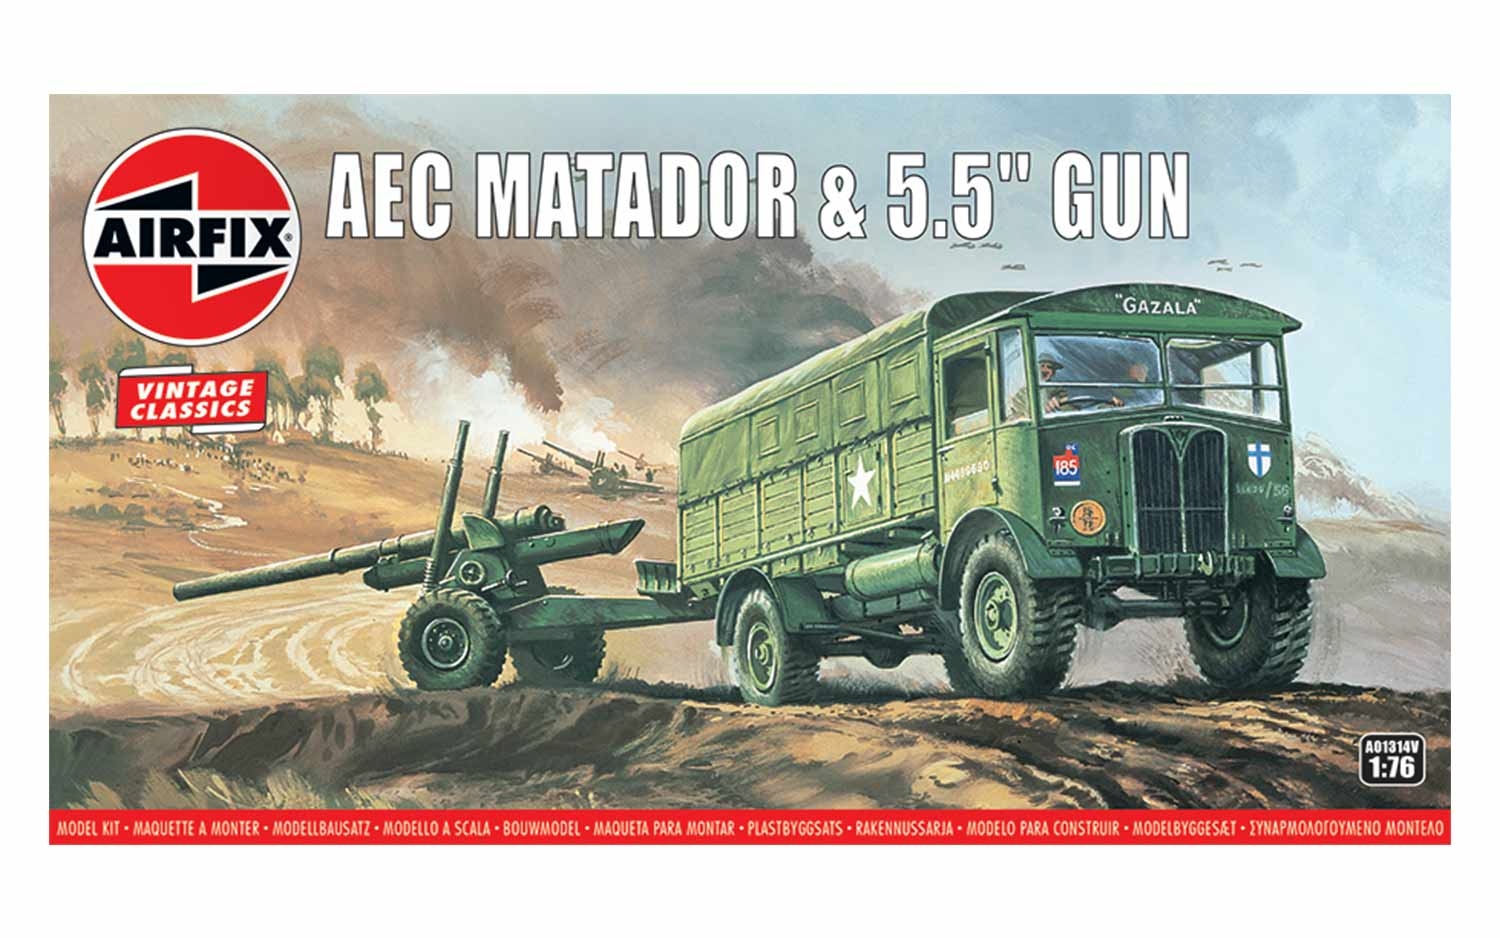 Airfix AEC MATADOR  5.5 INCH GUN 1/72 AIRFIX/ASSEMBLY INSTRUCTIONS G688 